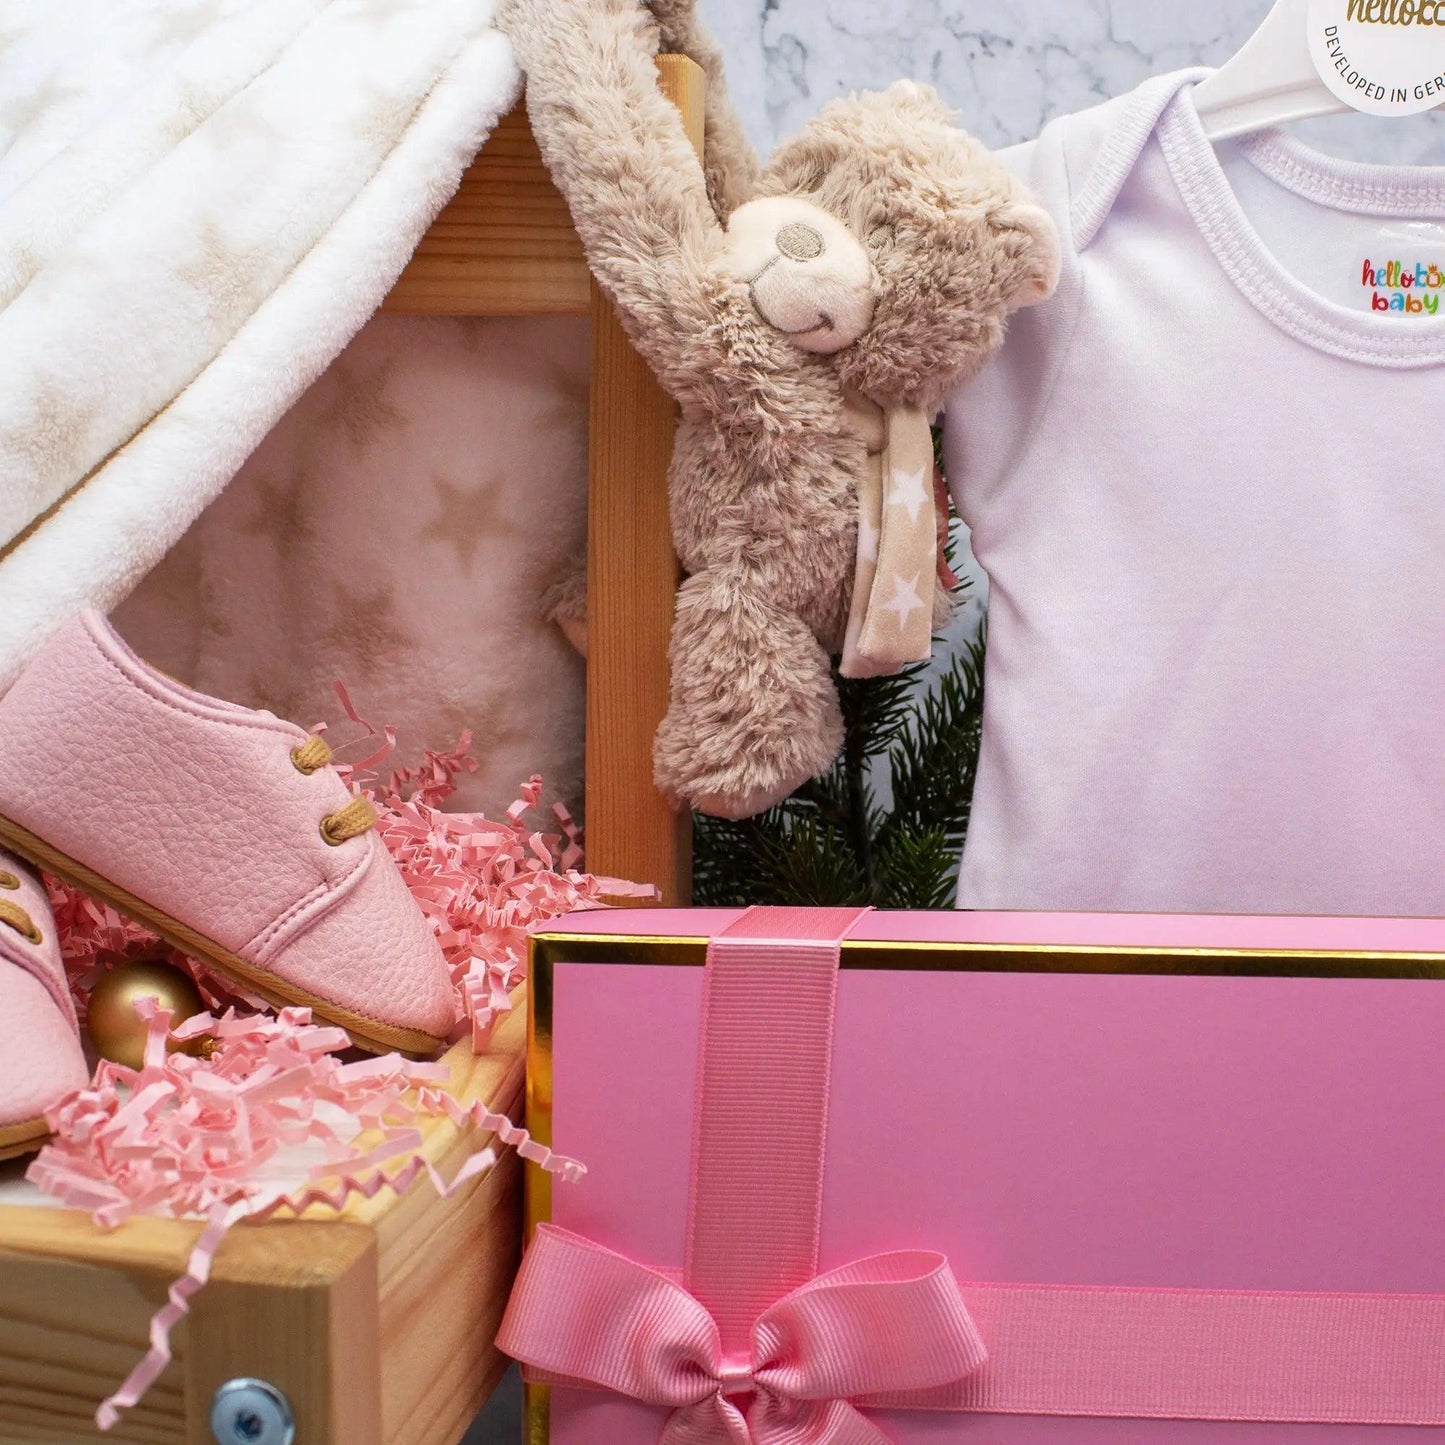 Hello box Baby Geschenkset zur Geburt für mädchen, Neugeborene geschenkset mit Lauflernschuhe, Babydecke, Kuscheltier Rosa Mädchen helloboxshop